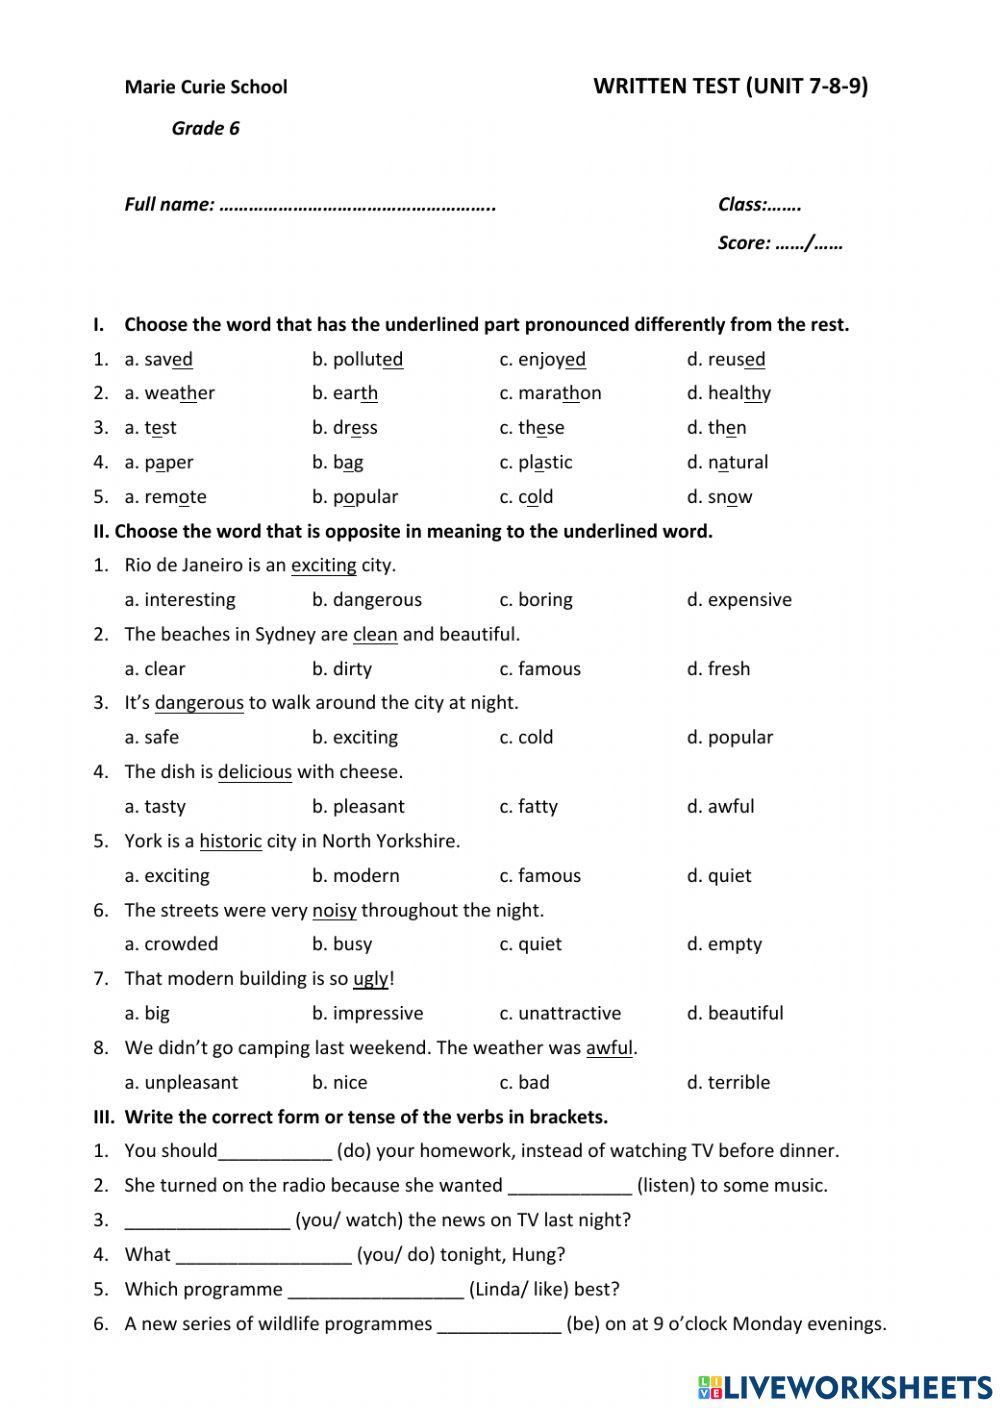 Written test (unit 7-8-9)